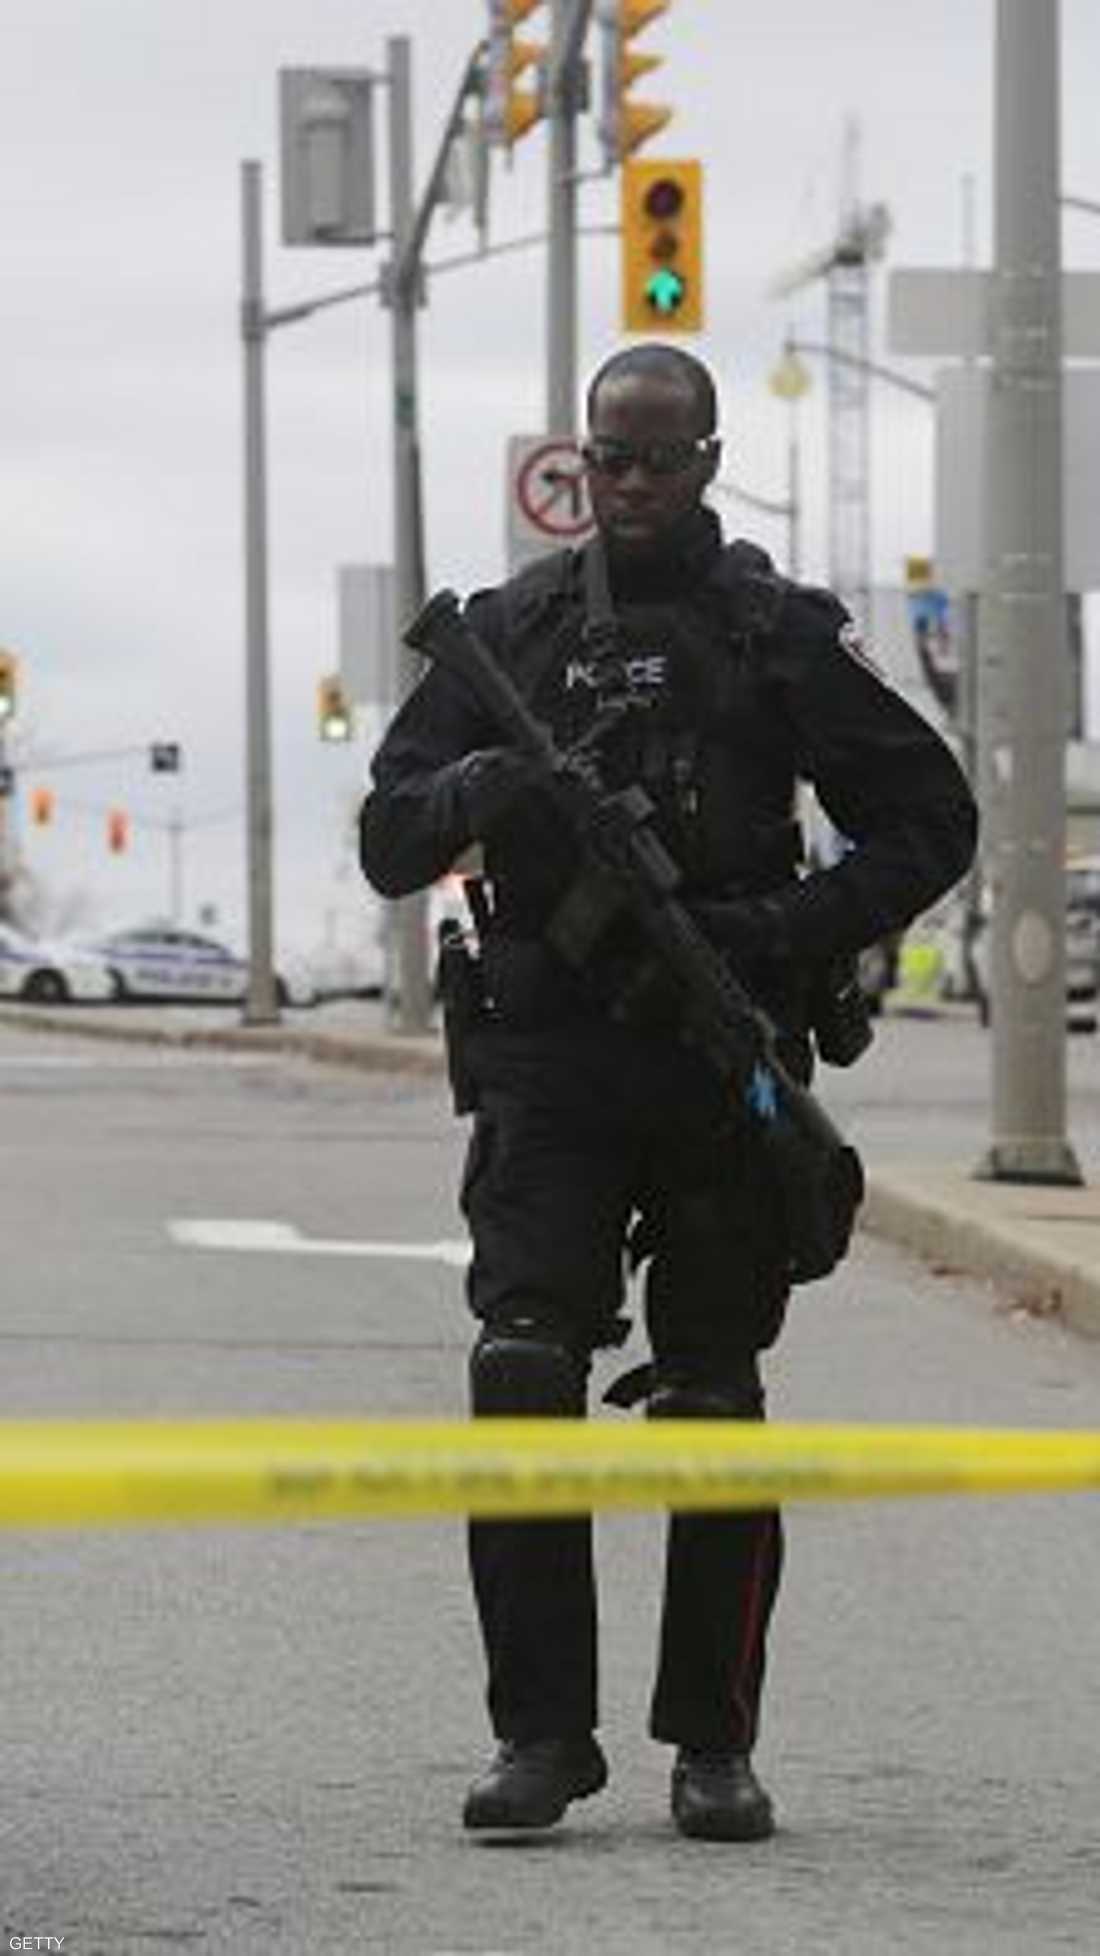 شرطي من القوات الخاصة خلف أحد الحواجز المحيطة بالبرلمان الكندي